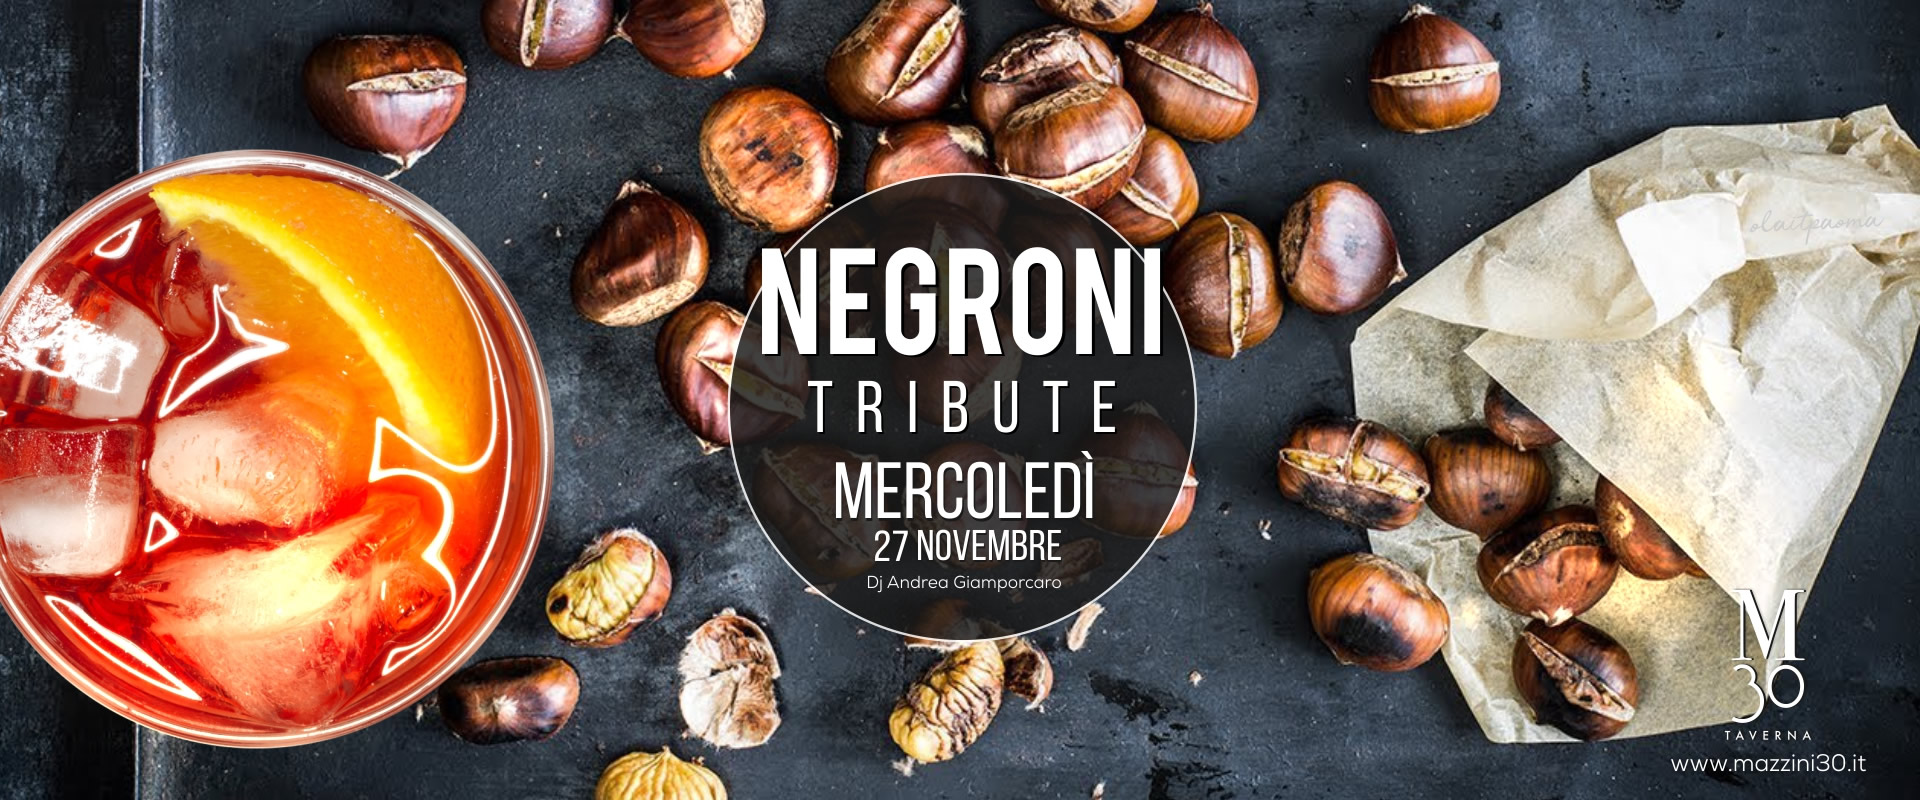 Negroni Tribute